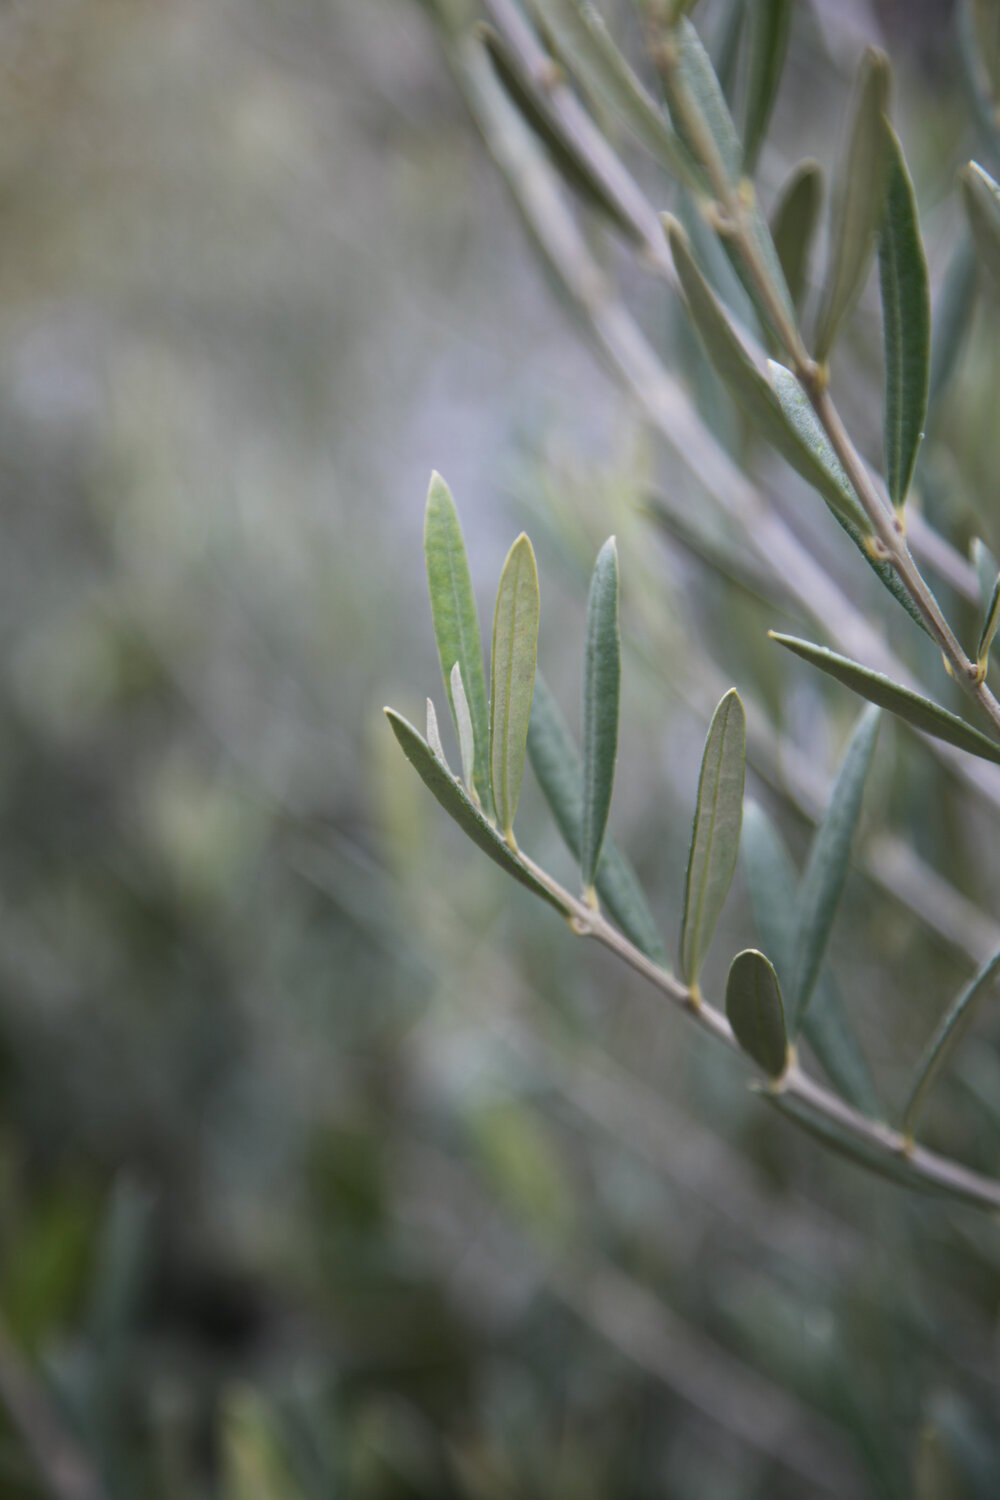 olive tree in pot